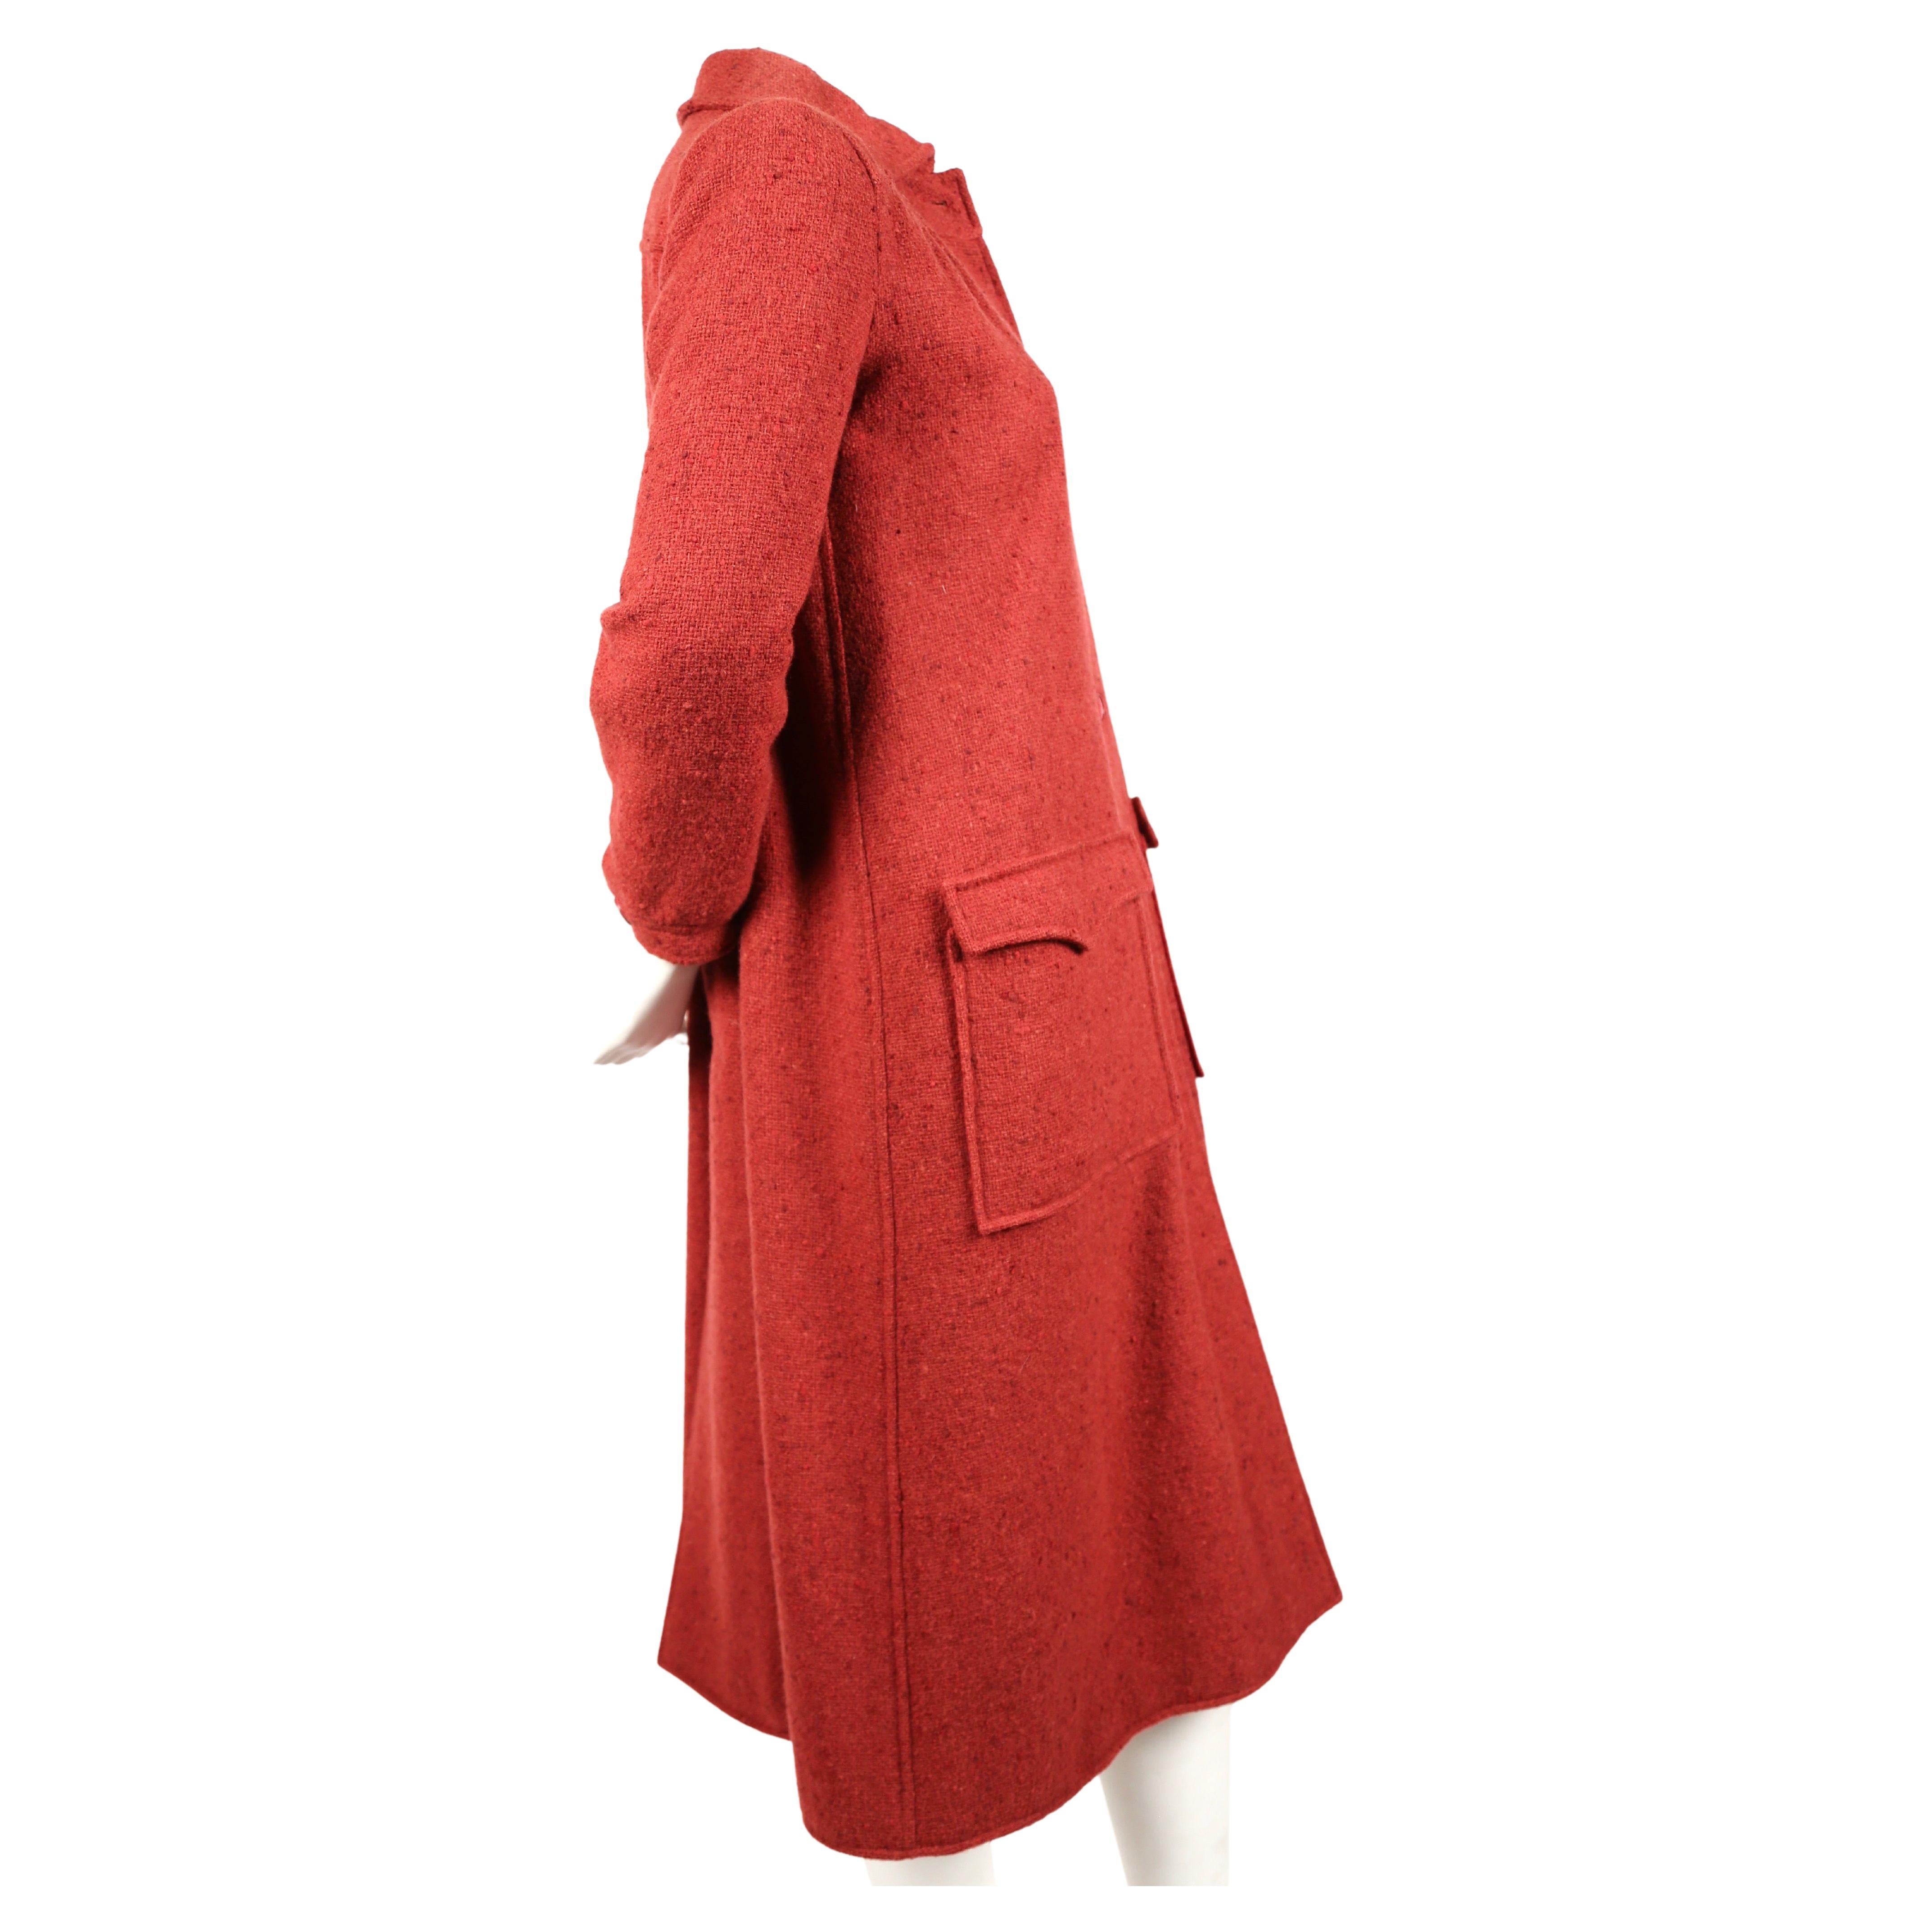 Himbeerfarbener, genoppter Wollmantel von Courreges aus den 1970er Jahren. Der Mantel ist an den Schultern/Armen schmal geschnitten und fällt von der Brust bis zum Saum locker. Etikettiert eine Größe '00', die am besten passt ein US 4 oder 6.